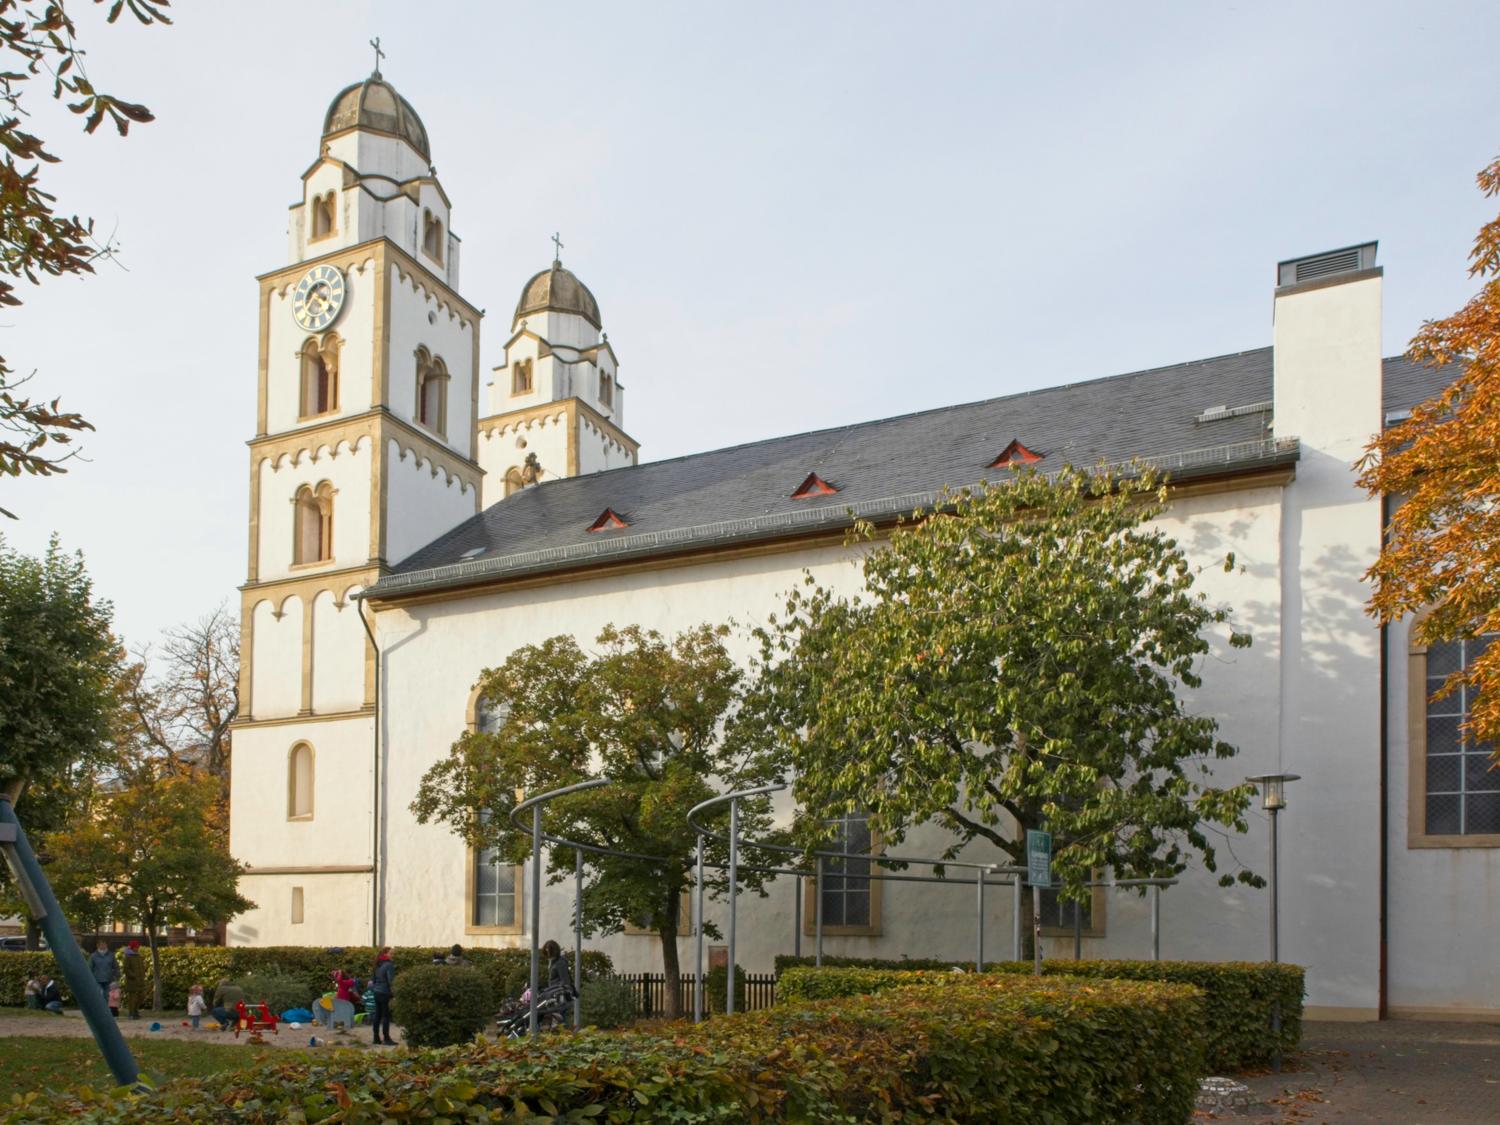 Sarazenenturmkirche Guntersblum